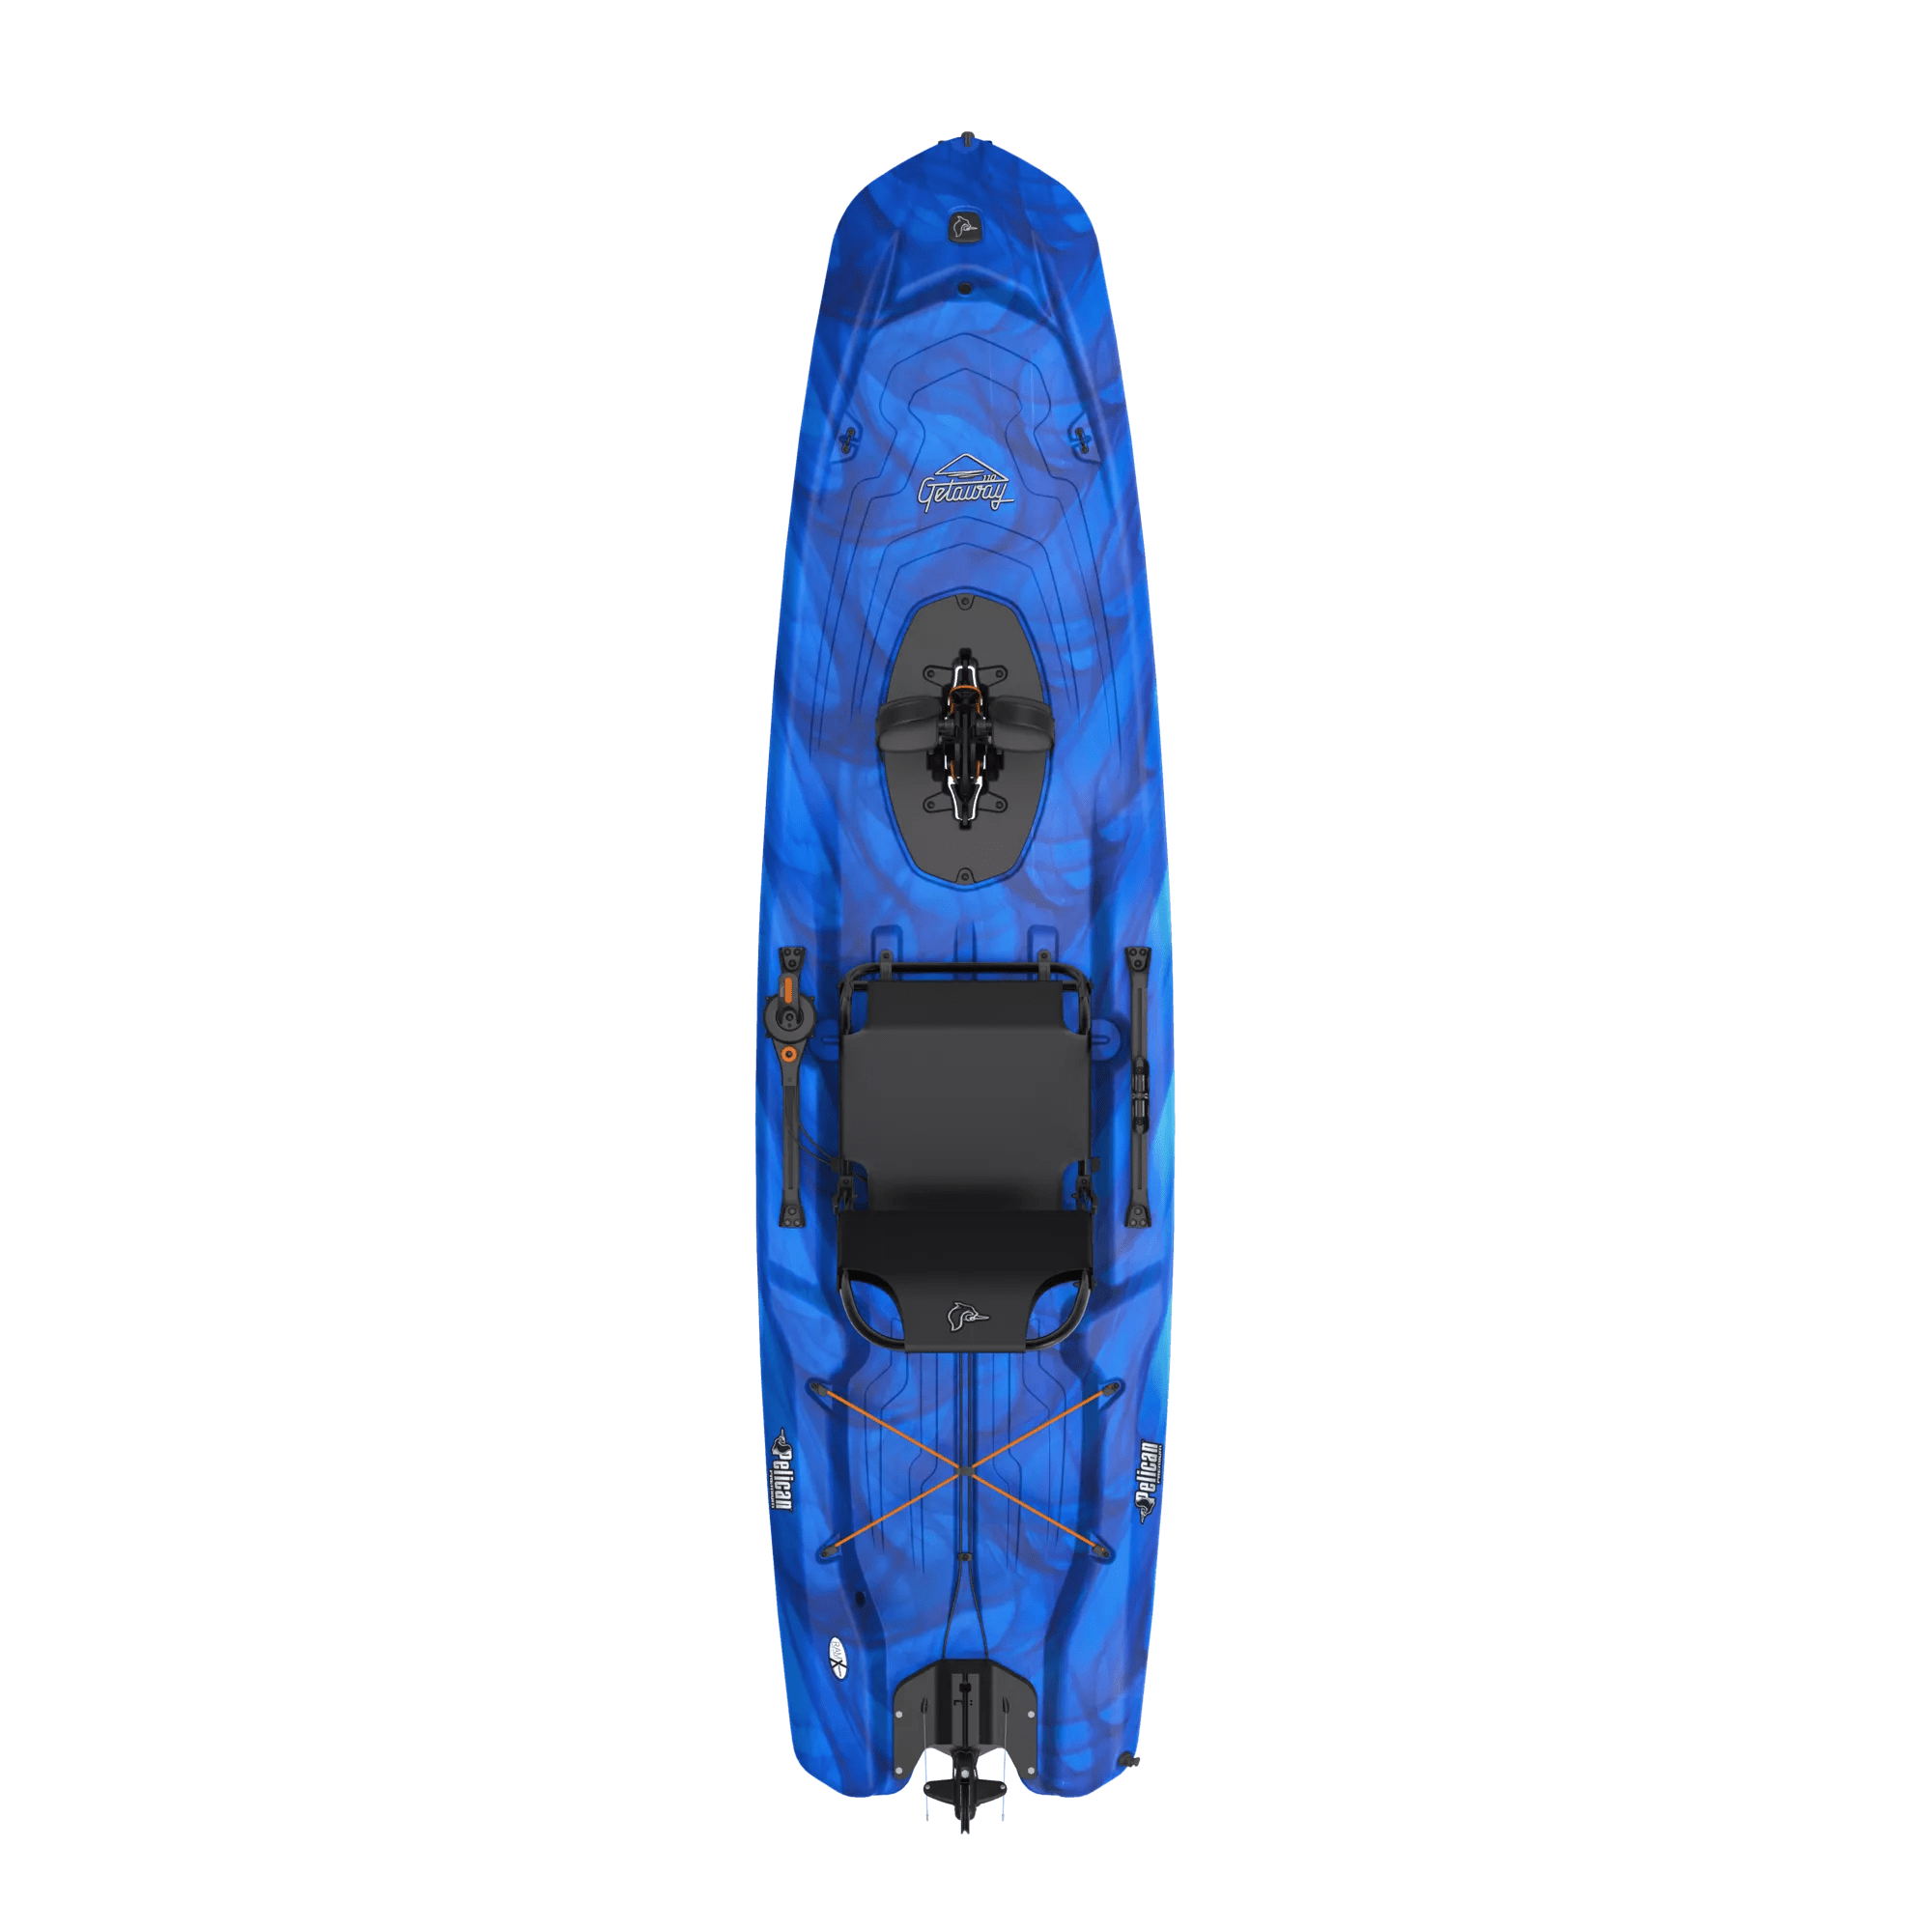 PELICAN - Getaway 110 HDII Recreational Pedal Kayak - Dark blue - MHP10P101-00 - TOP